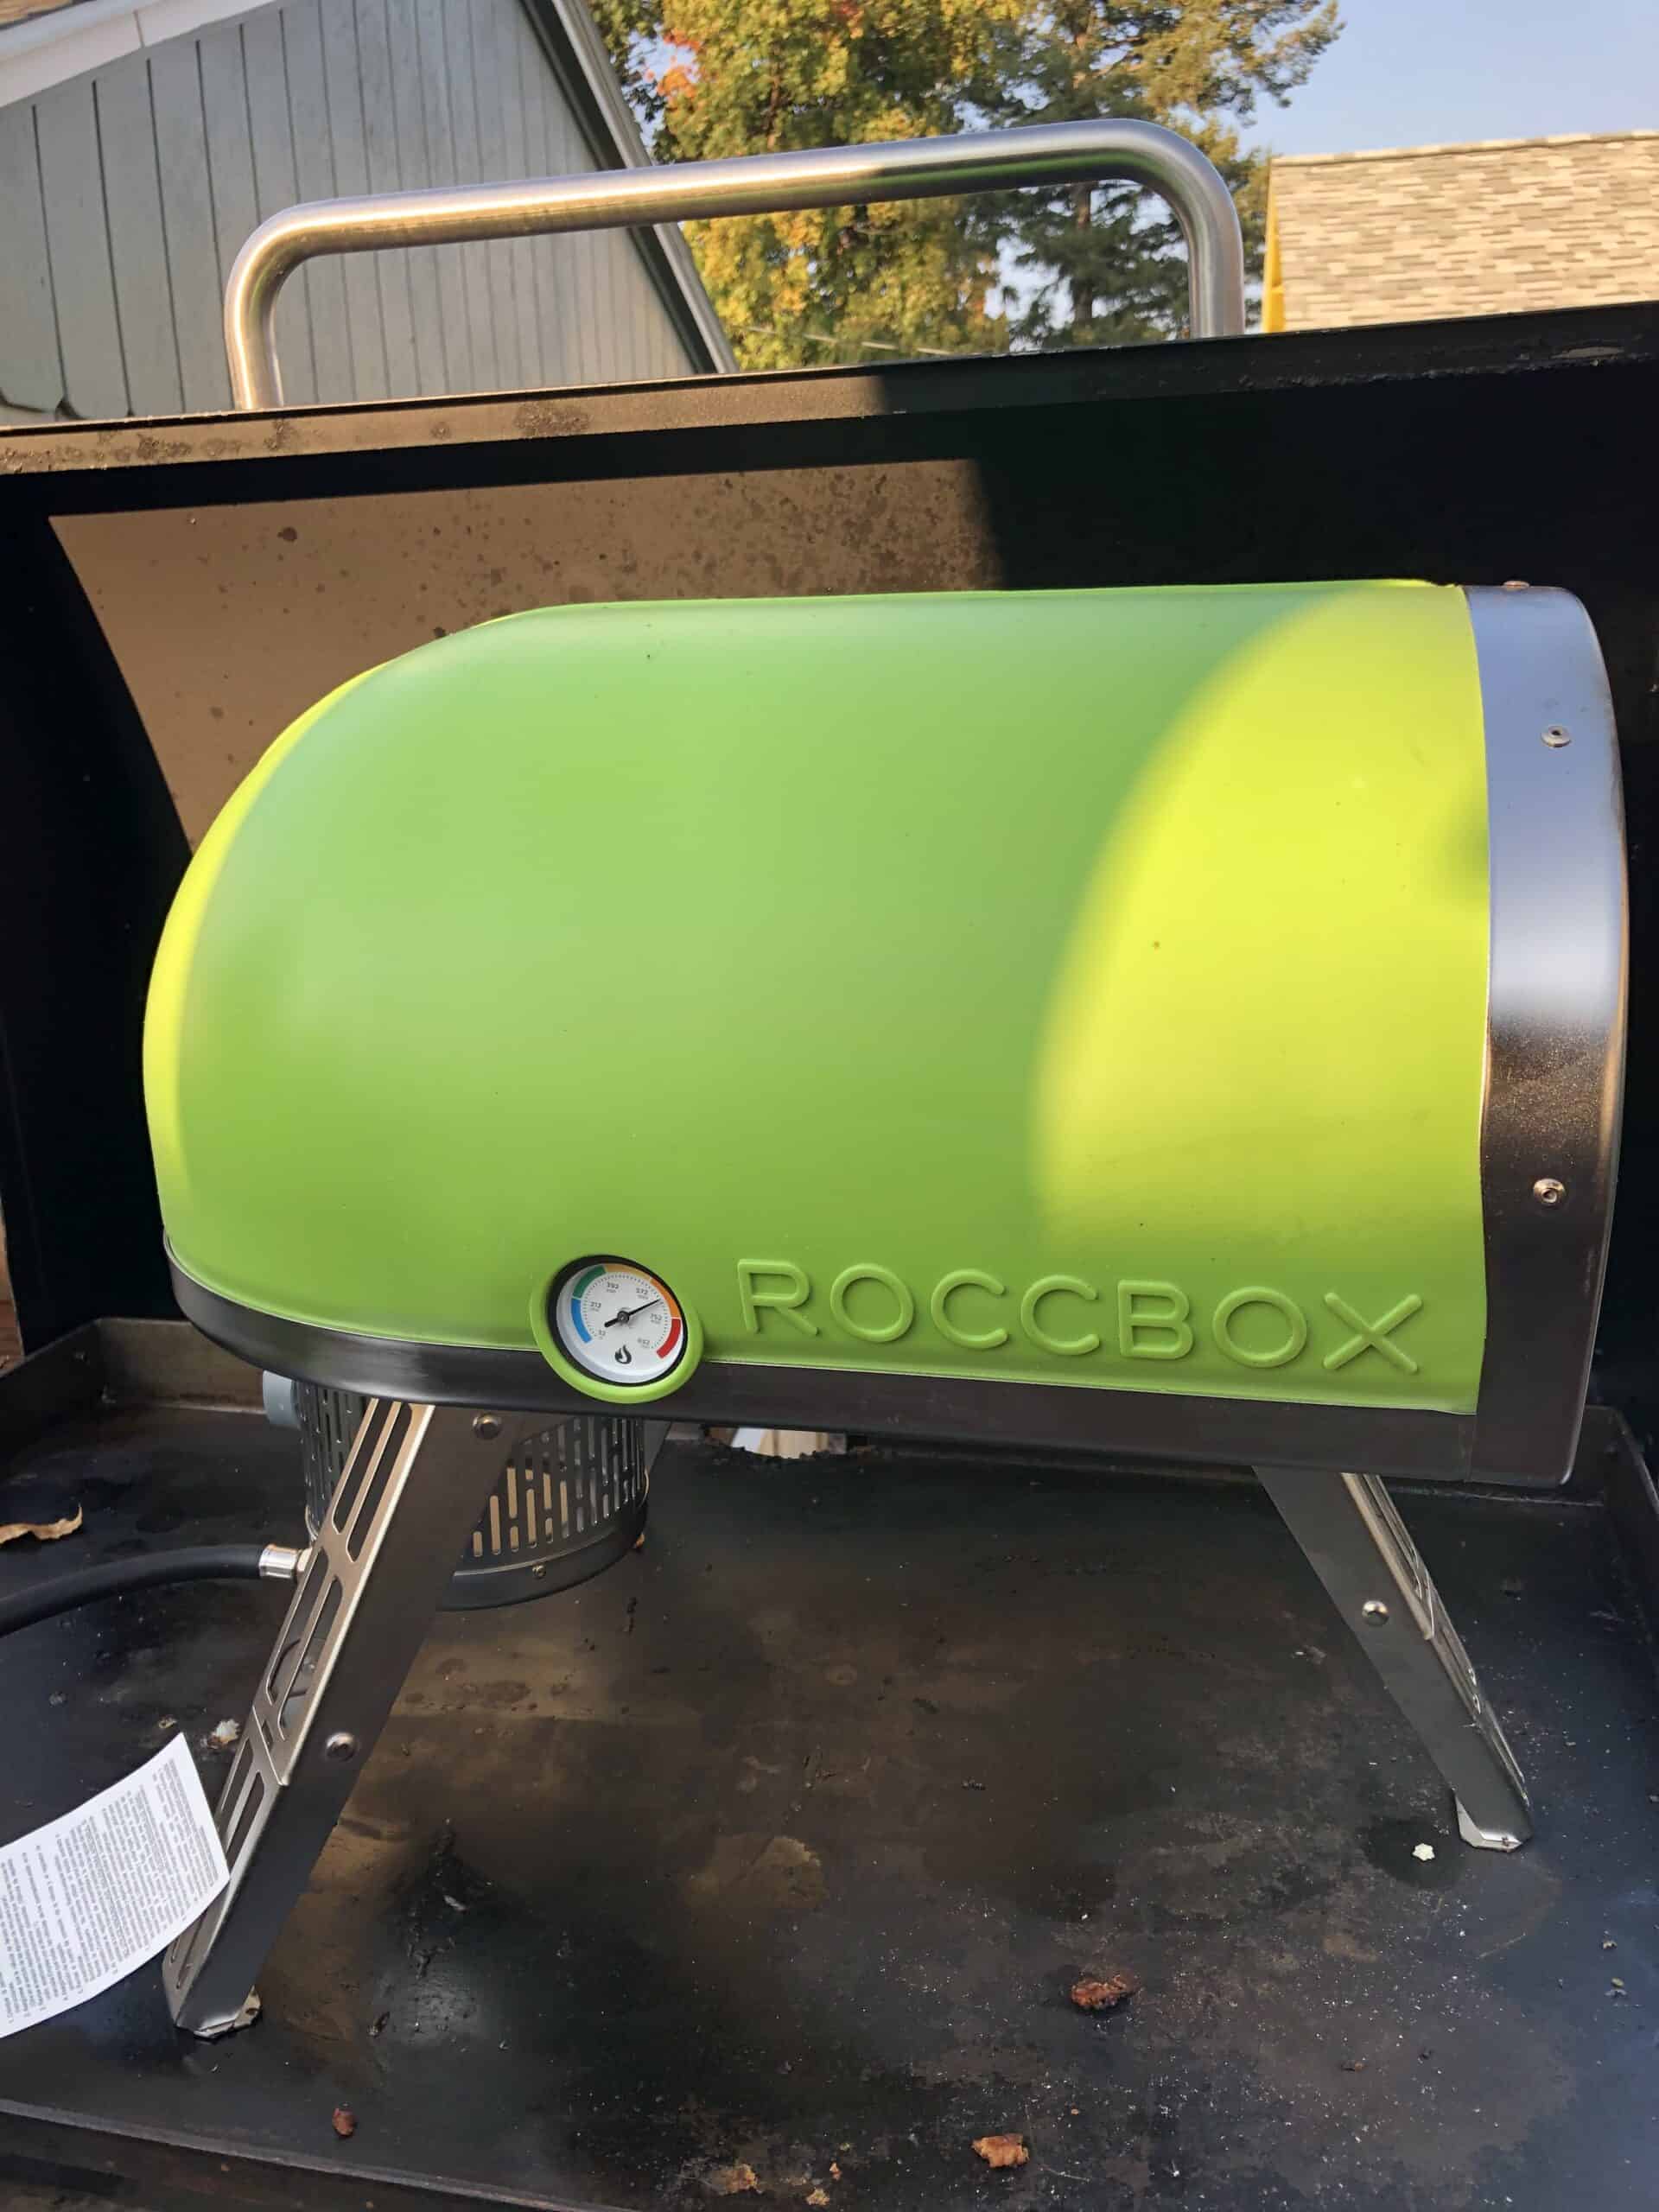 Roccbox pizza oven